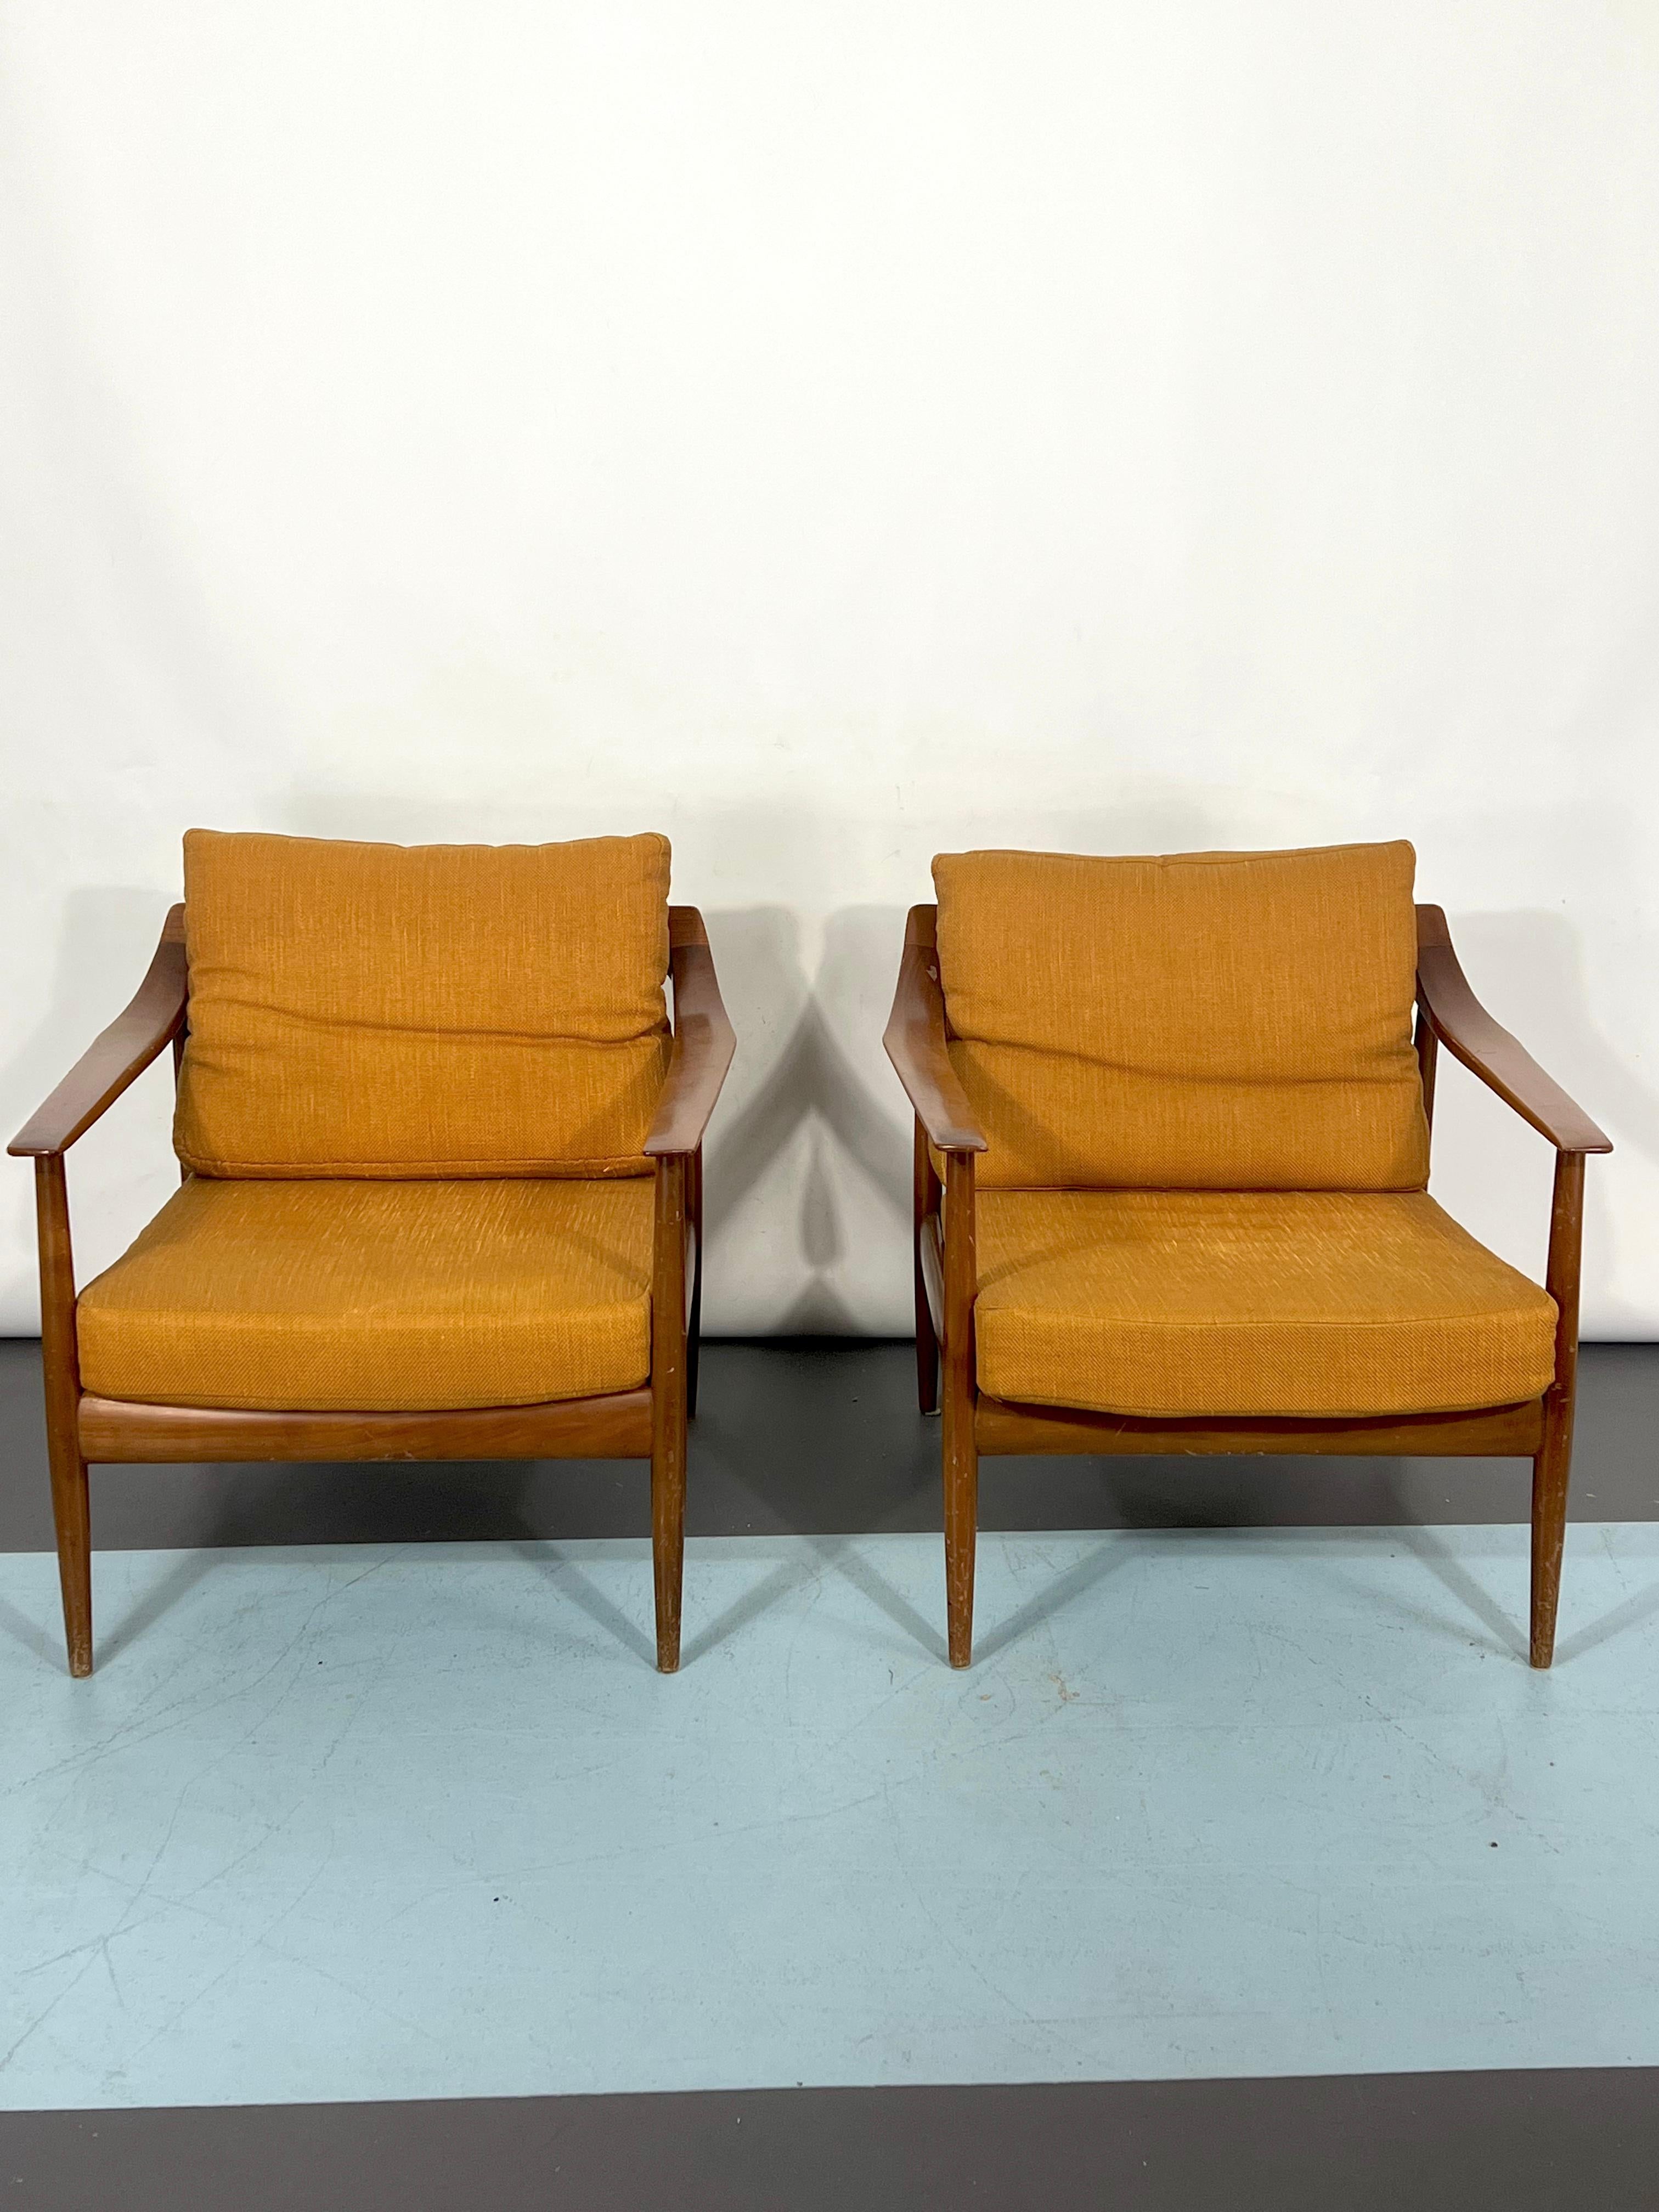 Bon état vintage avec traces d'âge et d'utilisation pour cet ensemble de deux fauteuils en bois de rose conçus par Walter Knoll et produits en Allemagne dans les années 50.